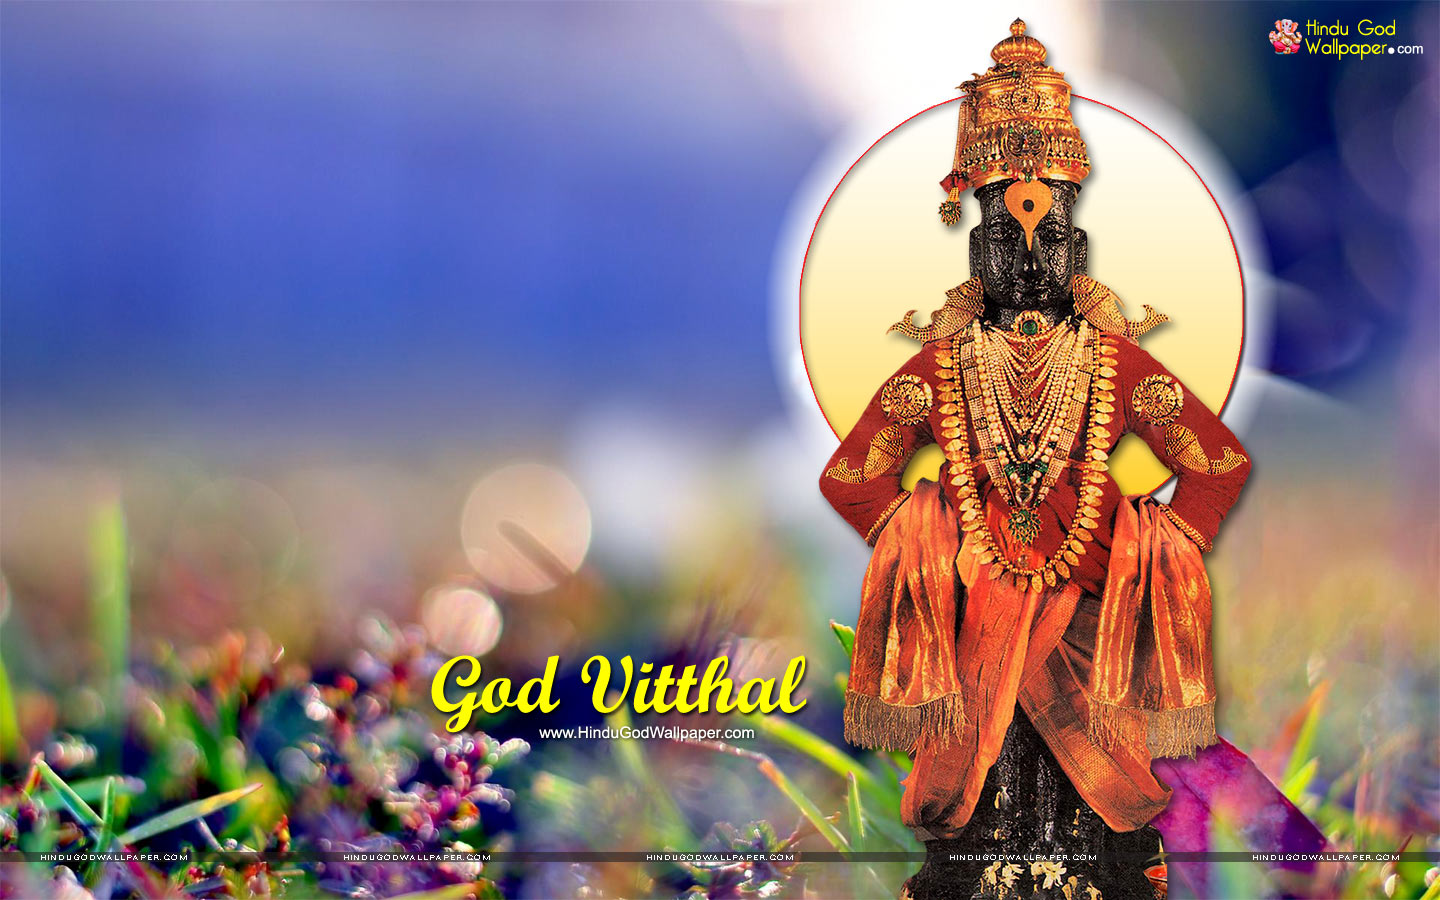 Shri Vitthal Pandharpur